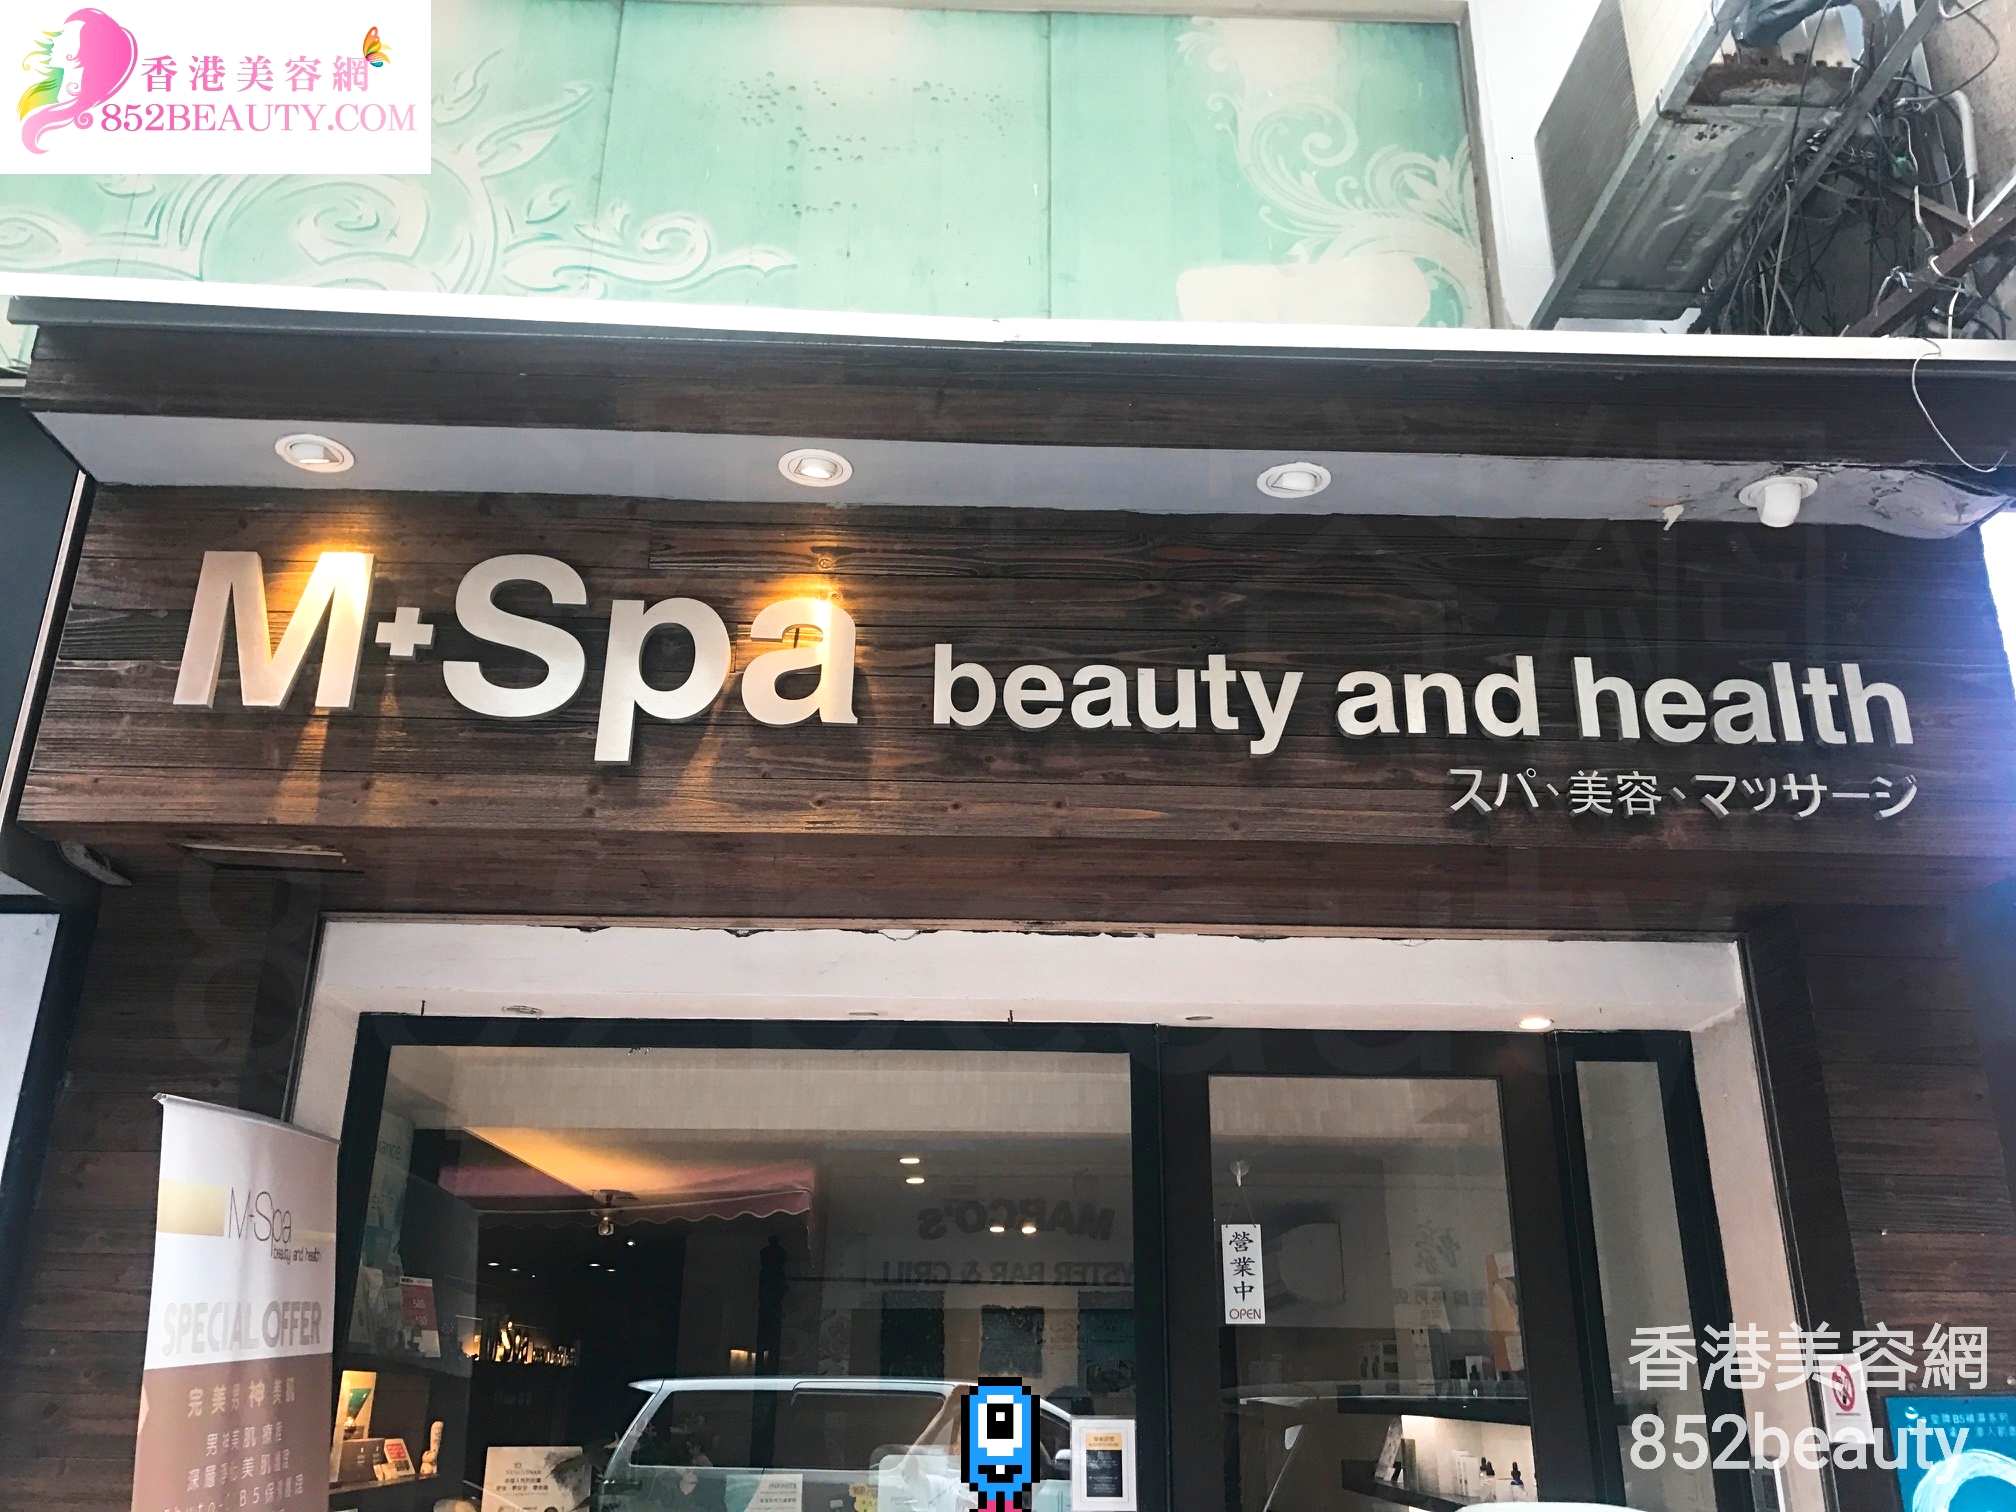 面部护理: M+Spa beauty and health